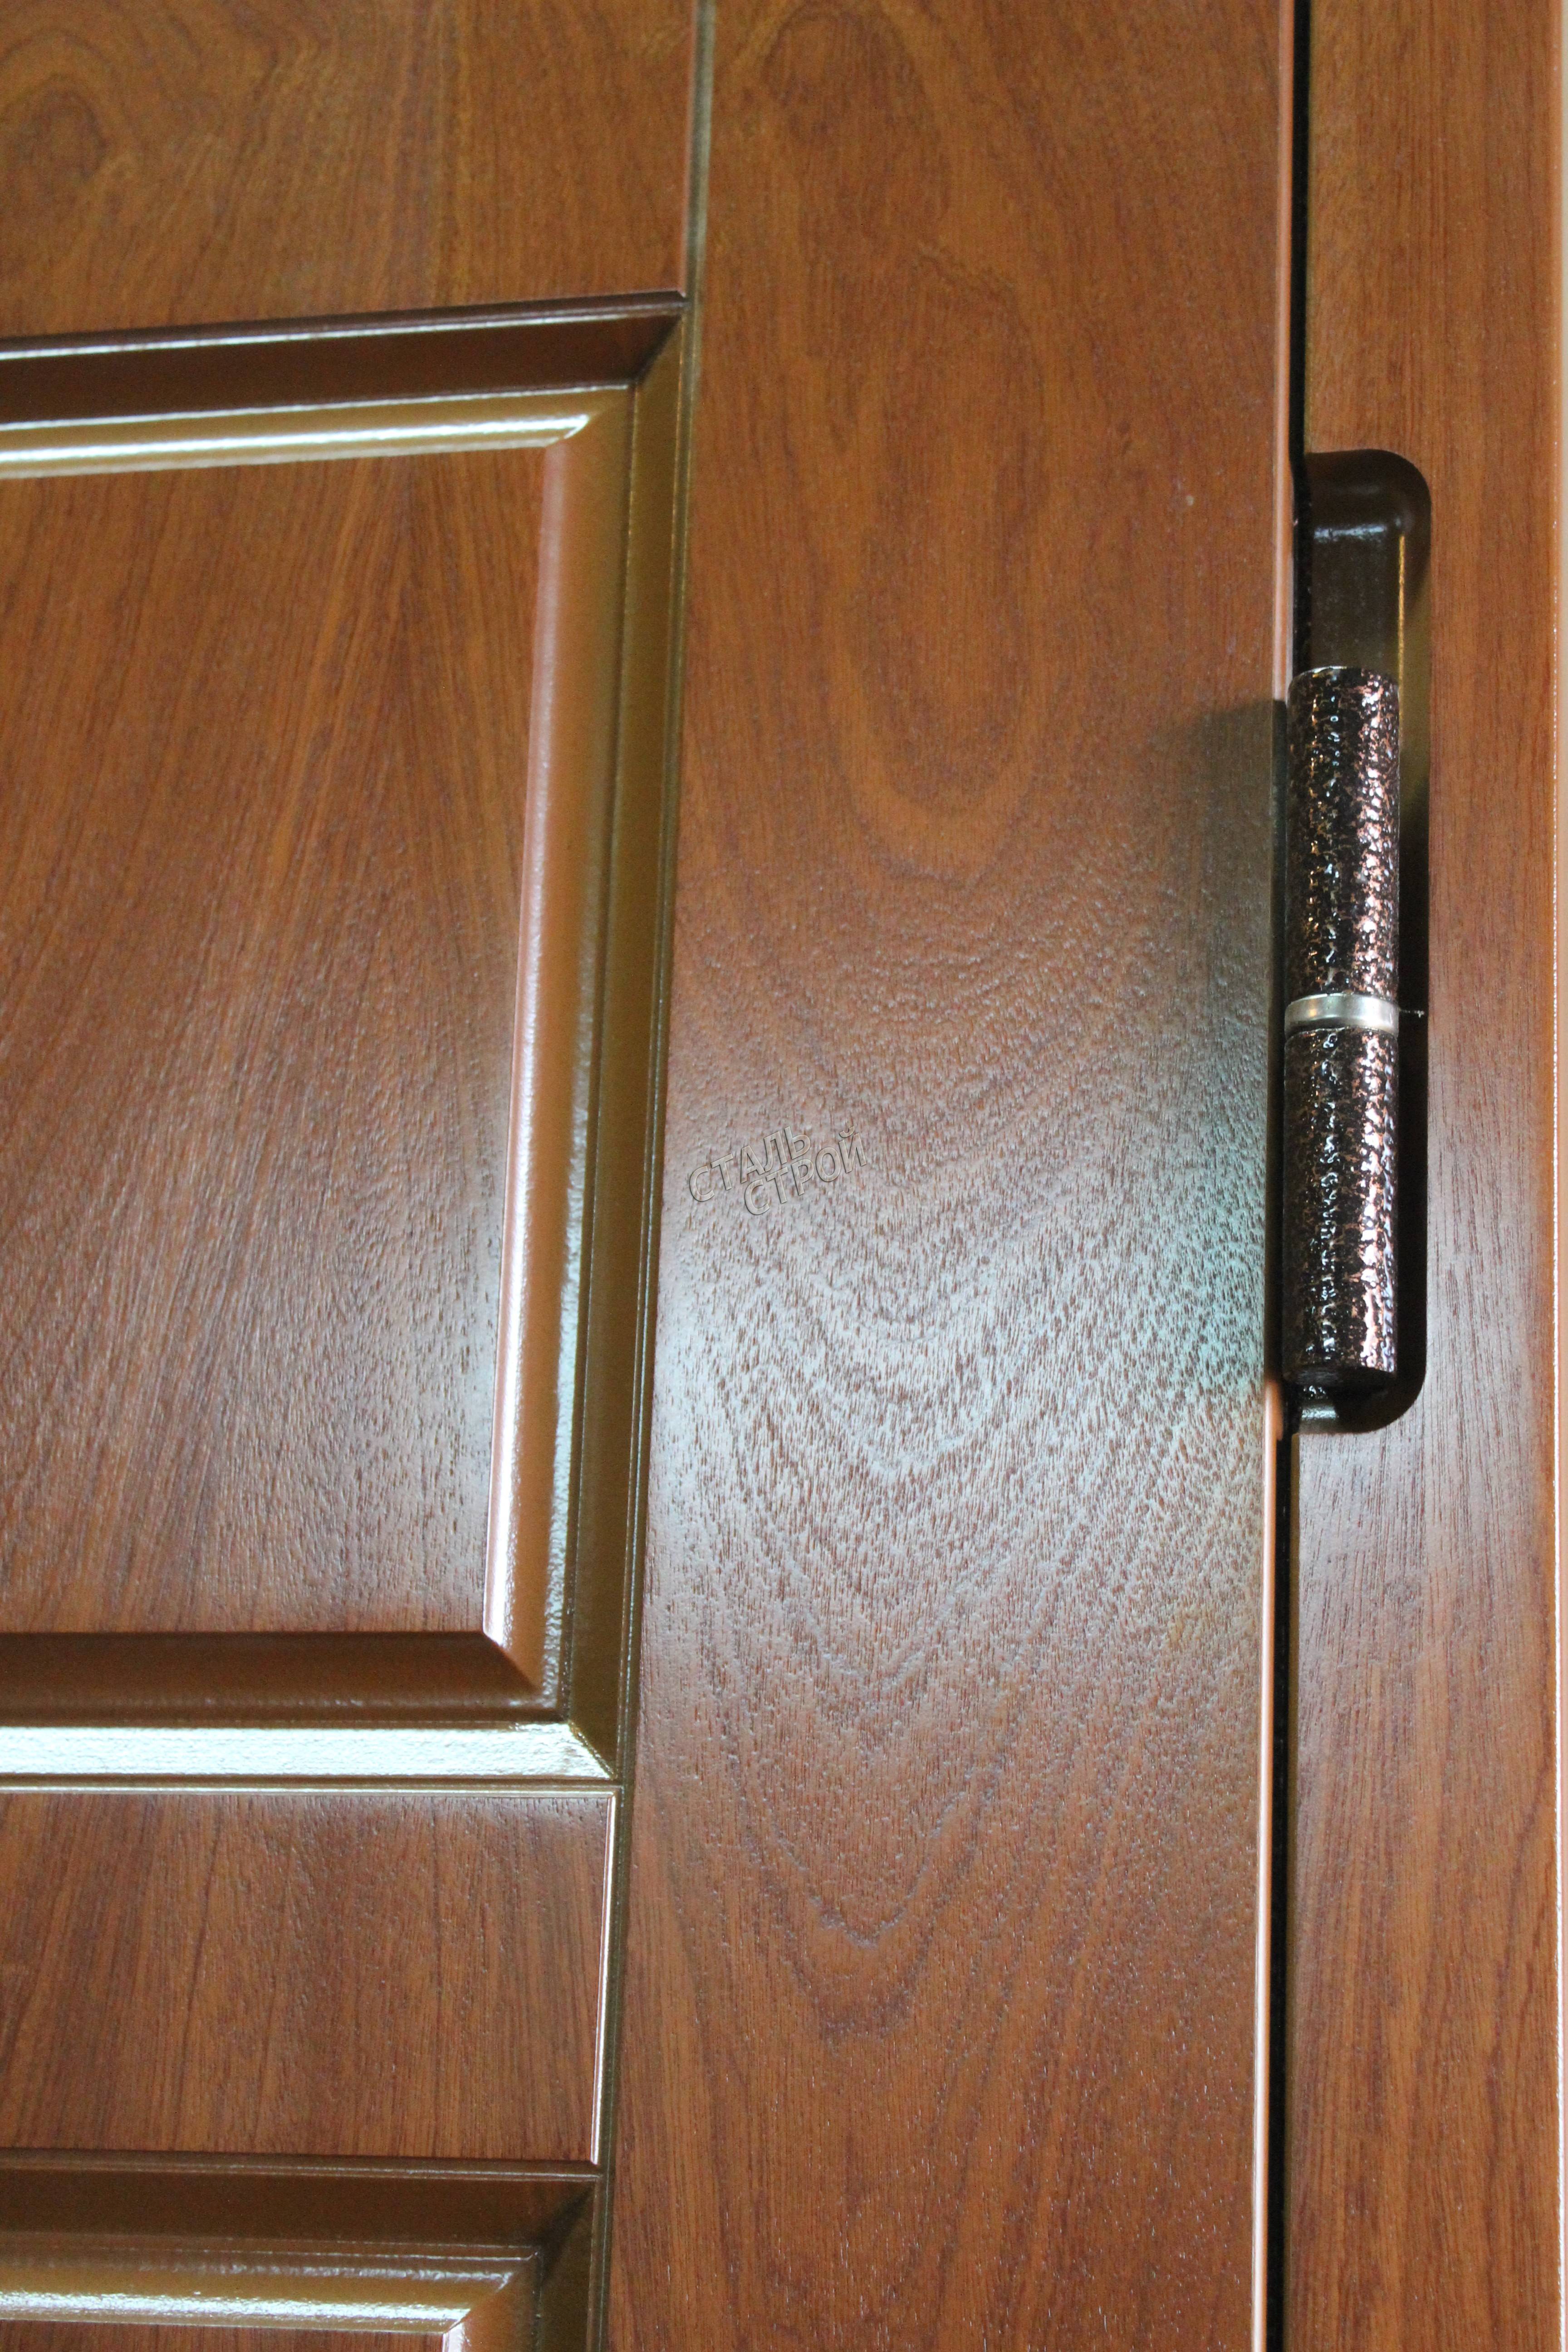 Ремонт металлических дверей: необходимость, проблемы и инструкции к их исправлению своими руками, советы